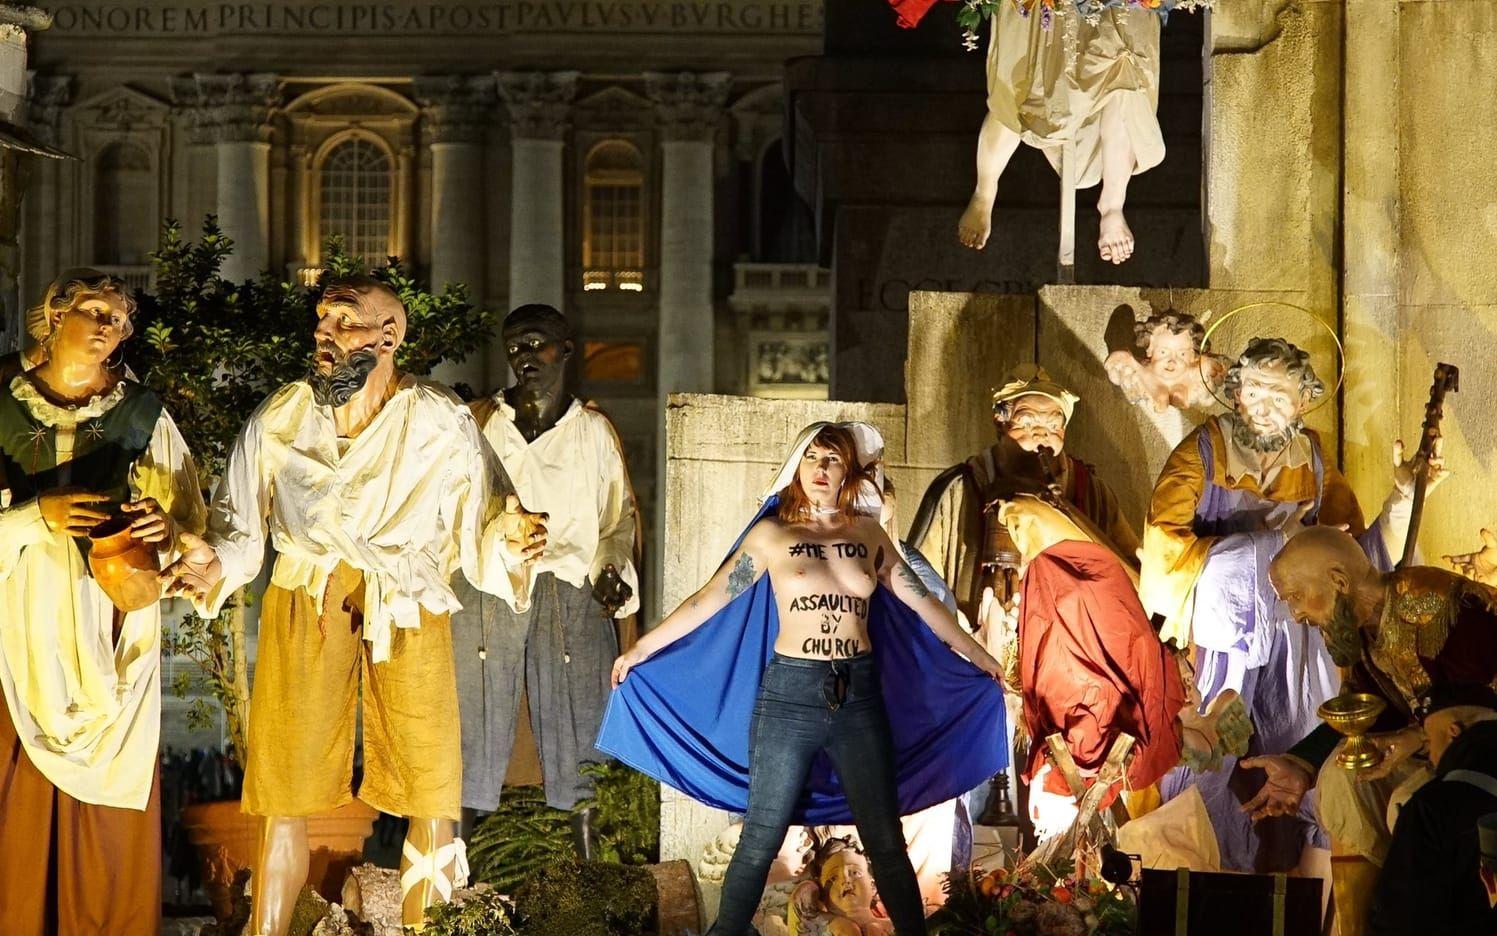 Femenaktivister uppmärksammade #metoo genom juldagsaktion i Vatikanen. Bilder: Femen